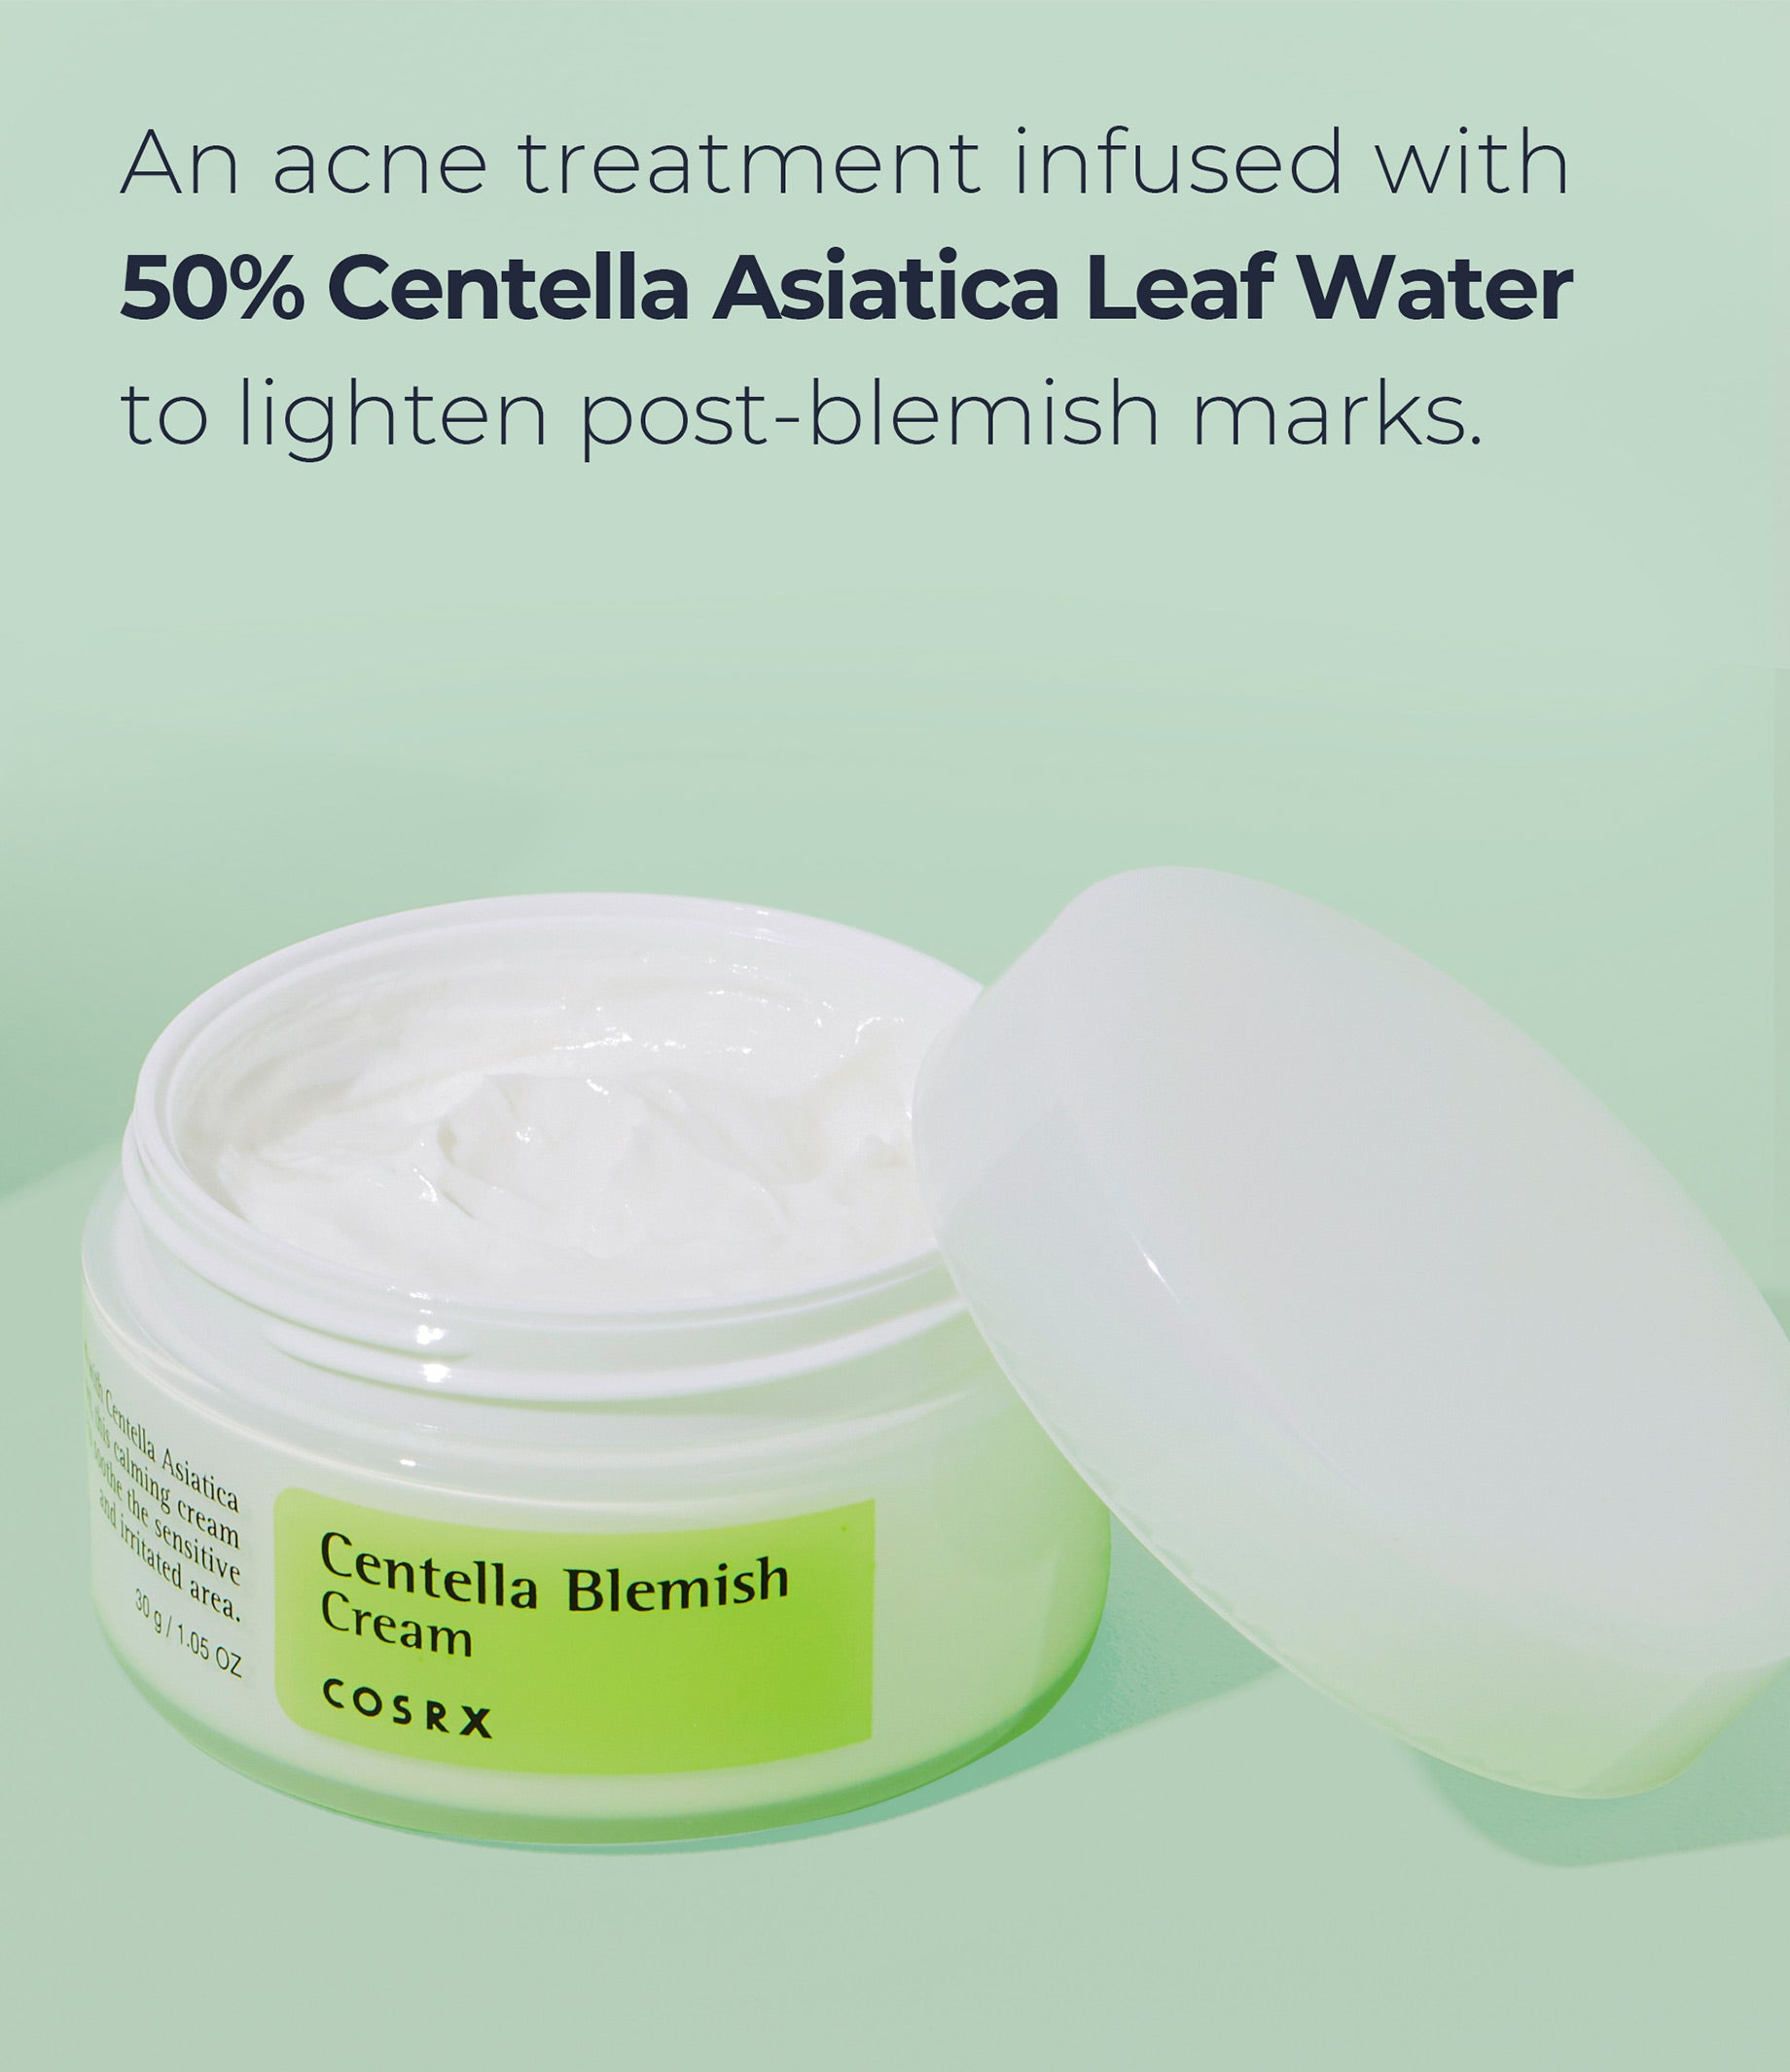 COSRX Centella Blemish Cream (30ml)